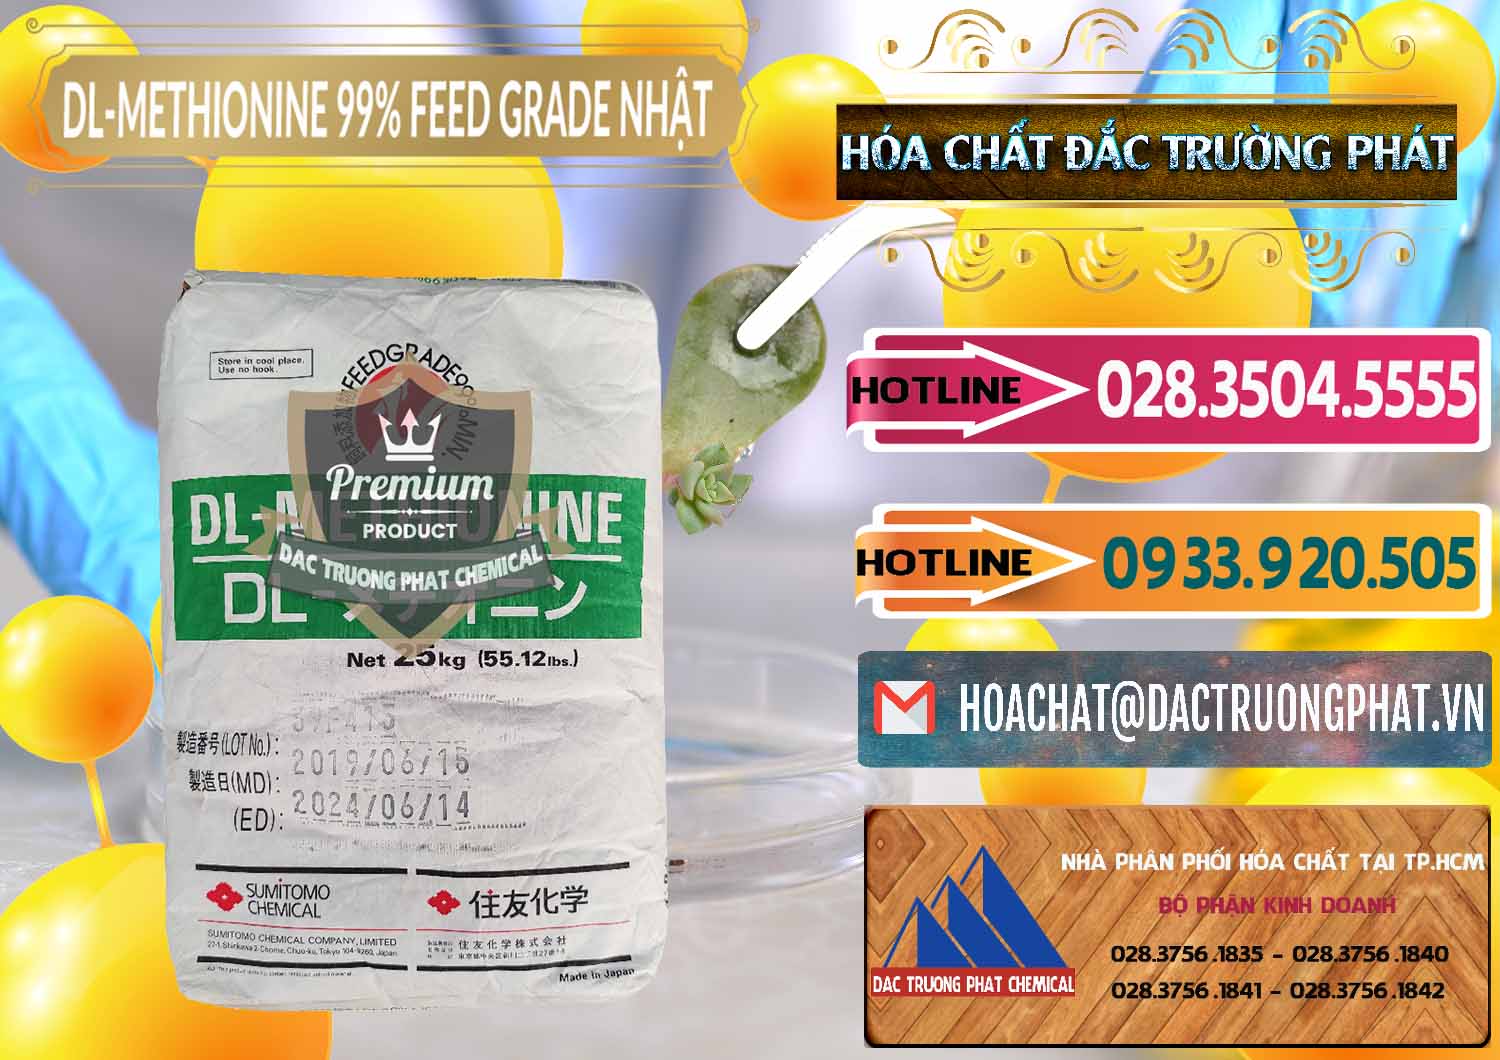 Cty chuyên phân phối _ bán DL-Methionine - C5H11NO2S Feed Grade Sumitomo Nhật Bản Japan - 0313 - Công ty kinh doanh _ cung cấp hóa chất tại TP.HCM - dactruongphat.vn